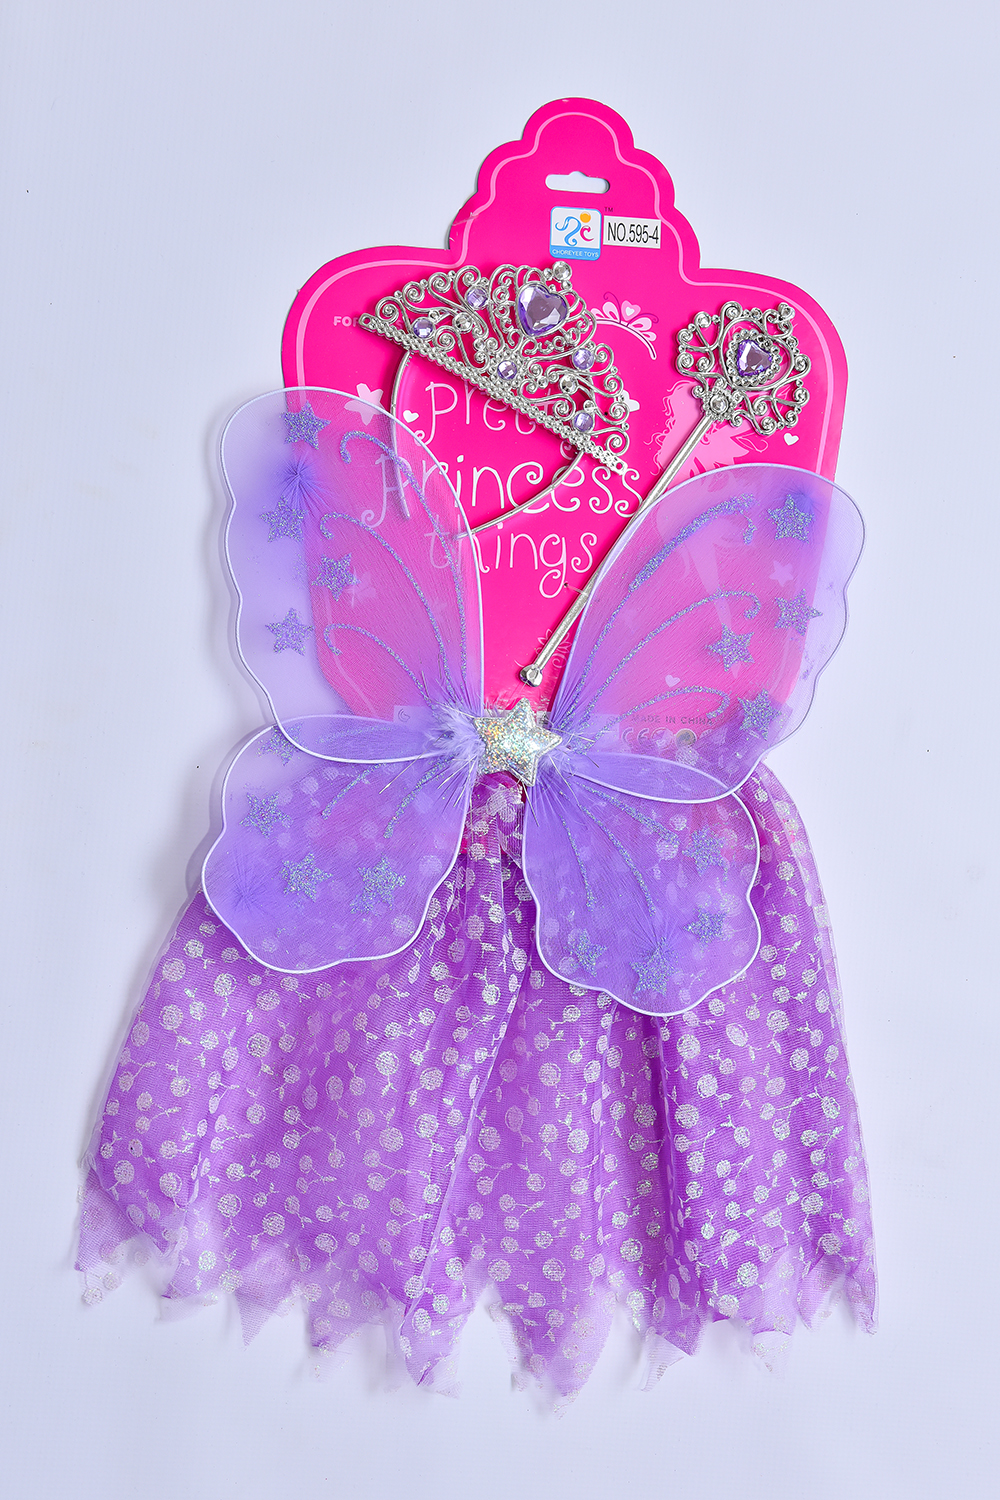 Šaty pre princeznú - fialové